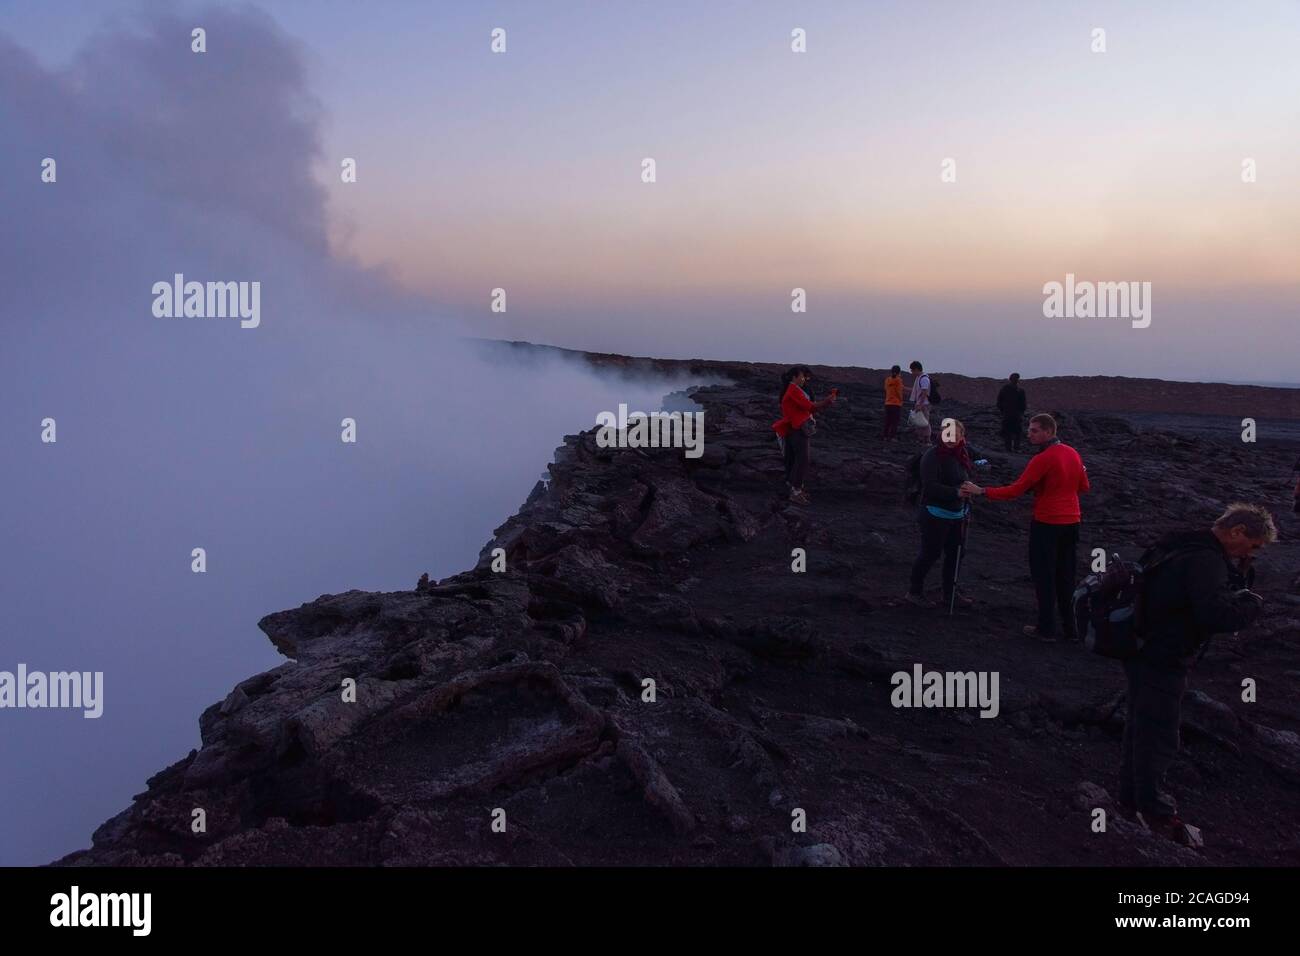 ERTA Ale, Ethiopie - Nov 2018: Groupe de personnes au bord du cratère volcanique d'Erta Ale Banque D'Images